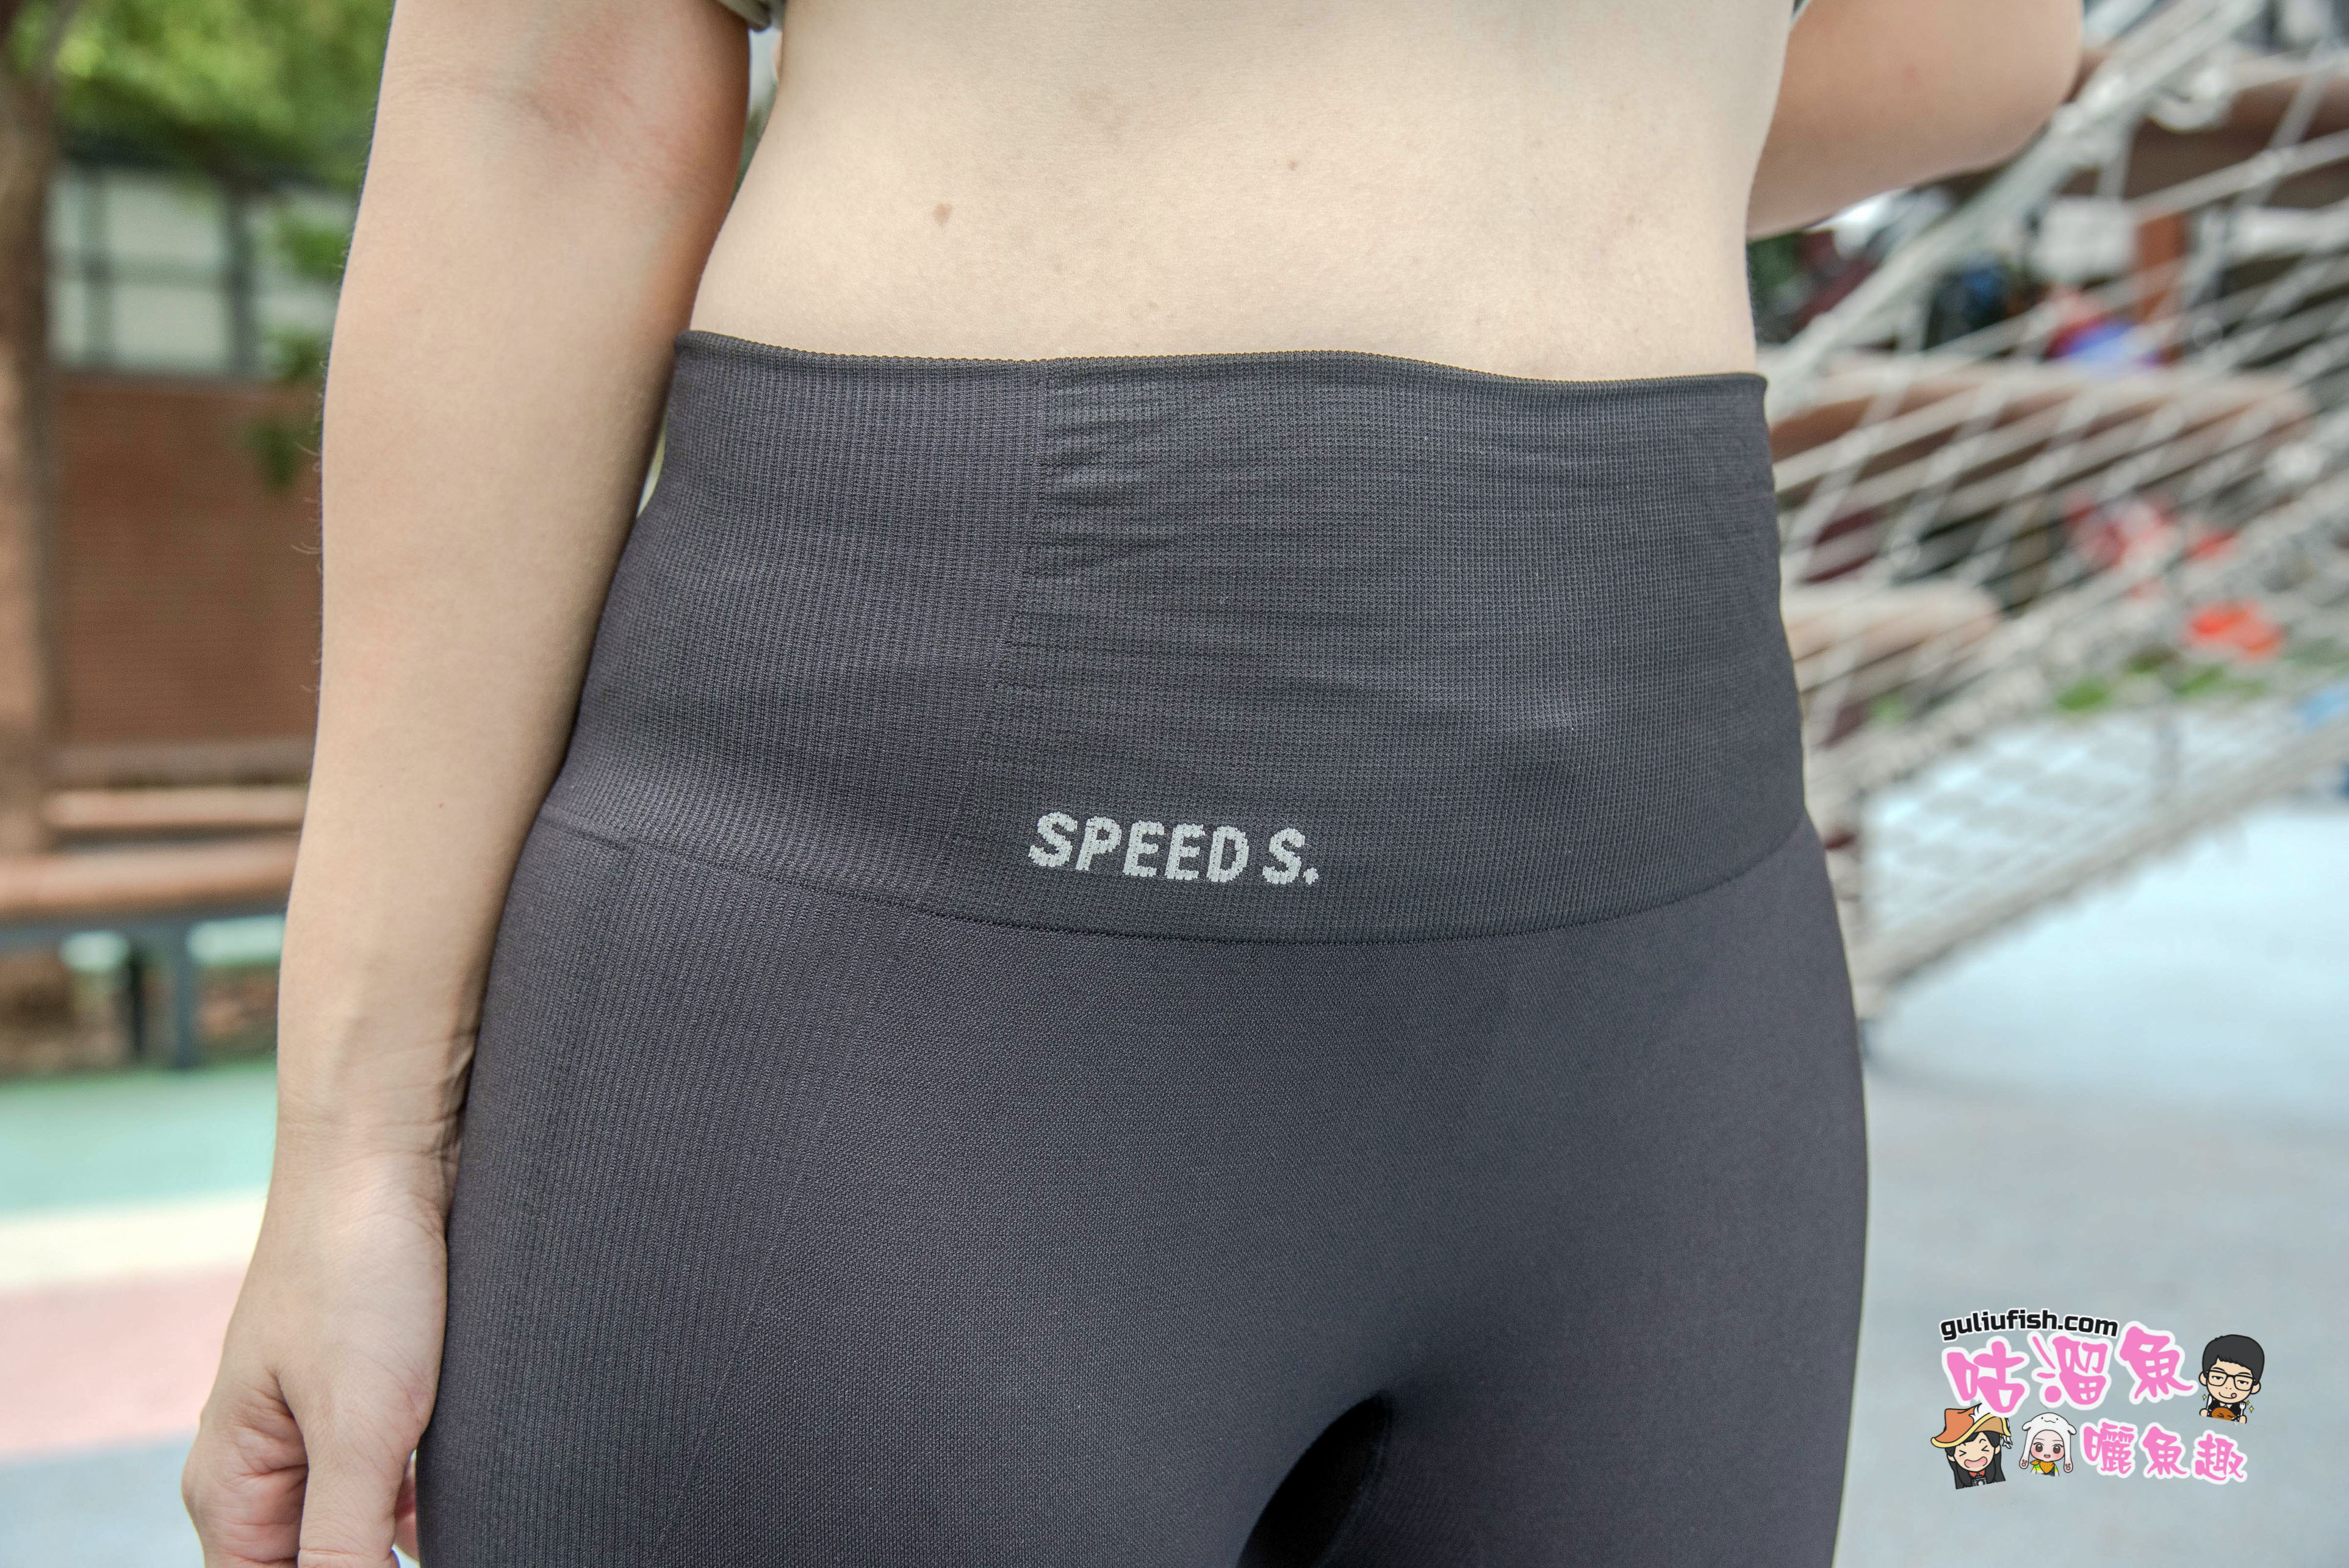 壓力褲推薦》2021人氣熱賣商品「SPEEDS.石墨烯超彈力美體褲」 心得分享